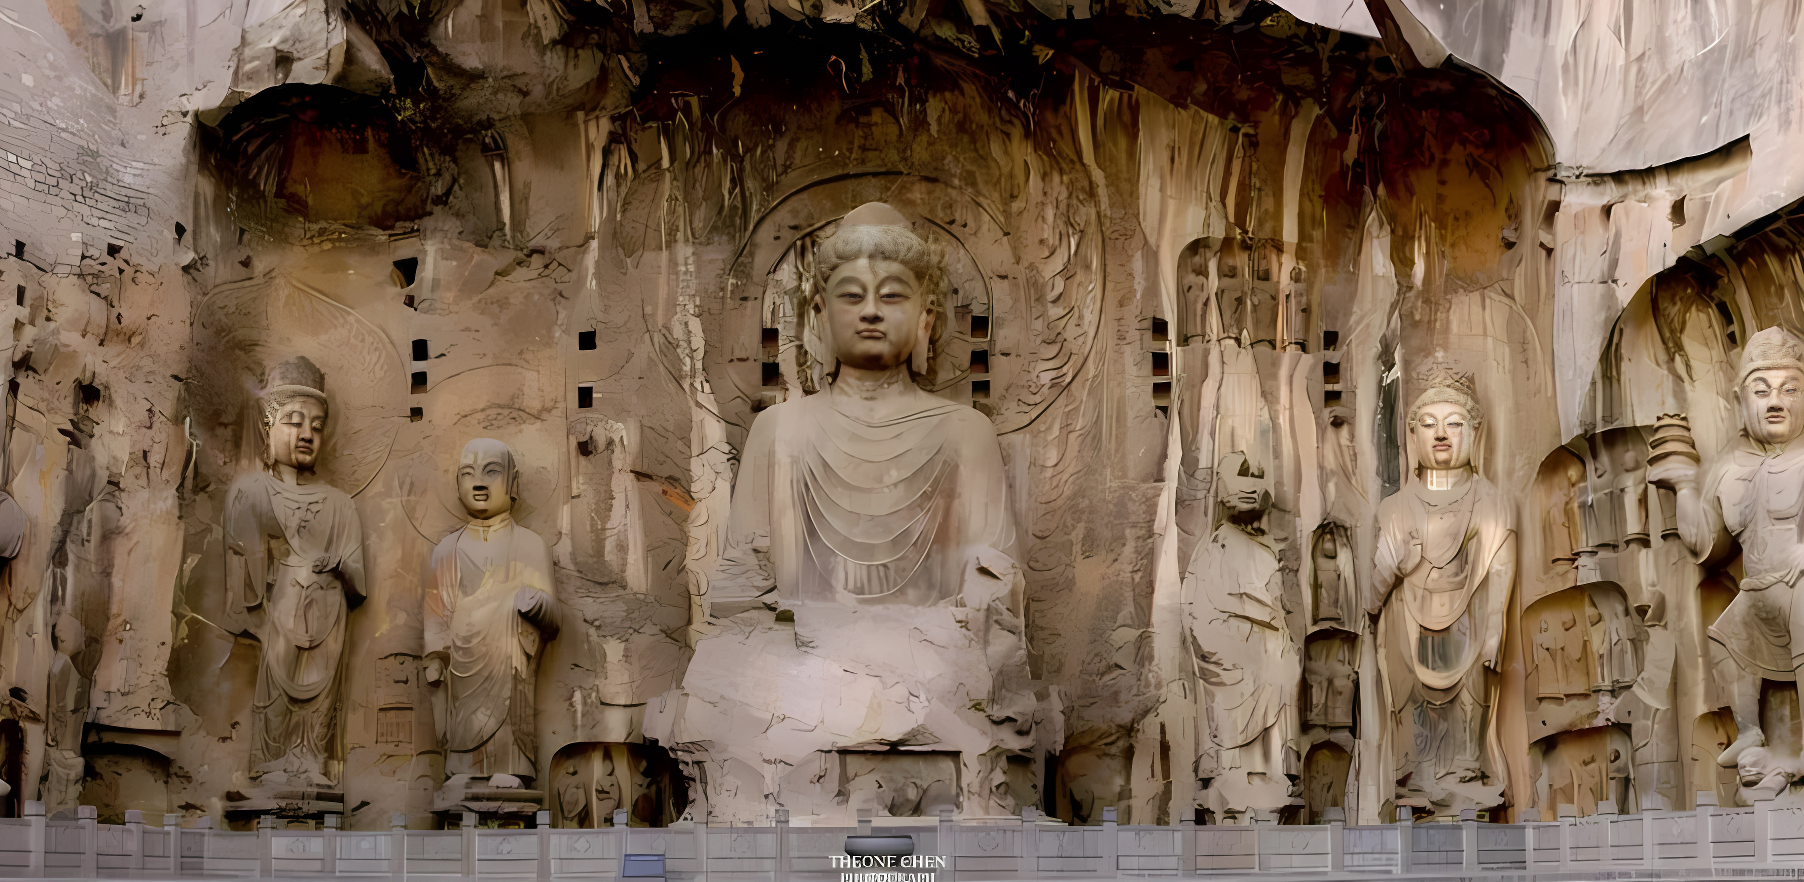 这是一组雕刻精美的佛像，位于岩石洞窟中，展示了古代宗教艺术和雕塑技艺。